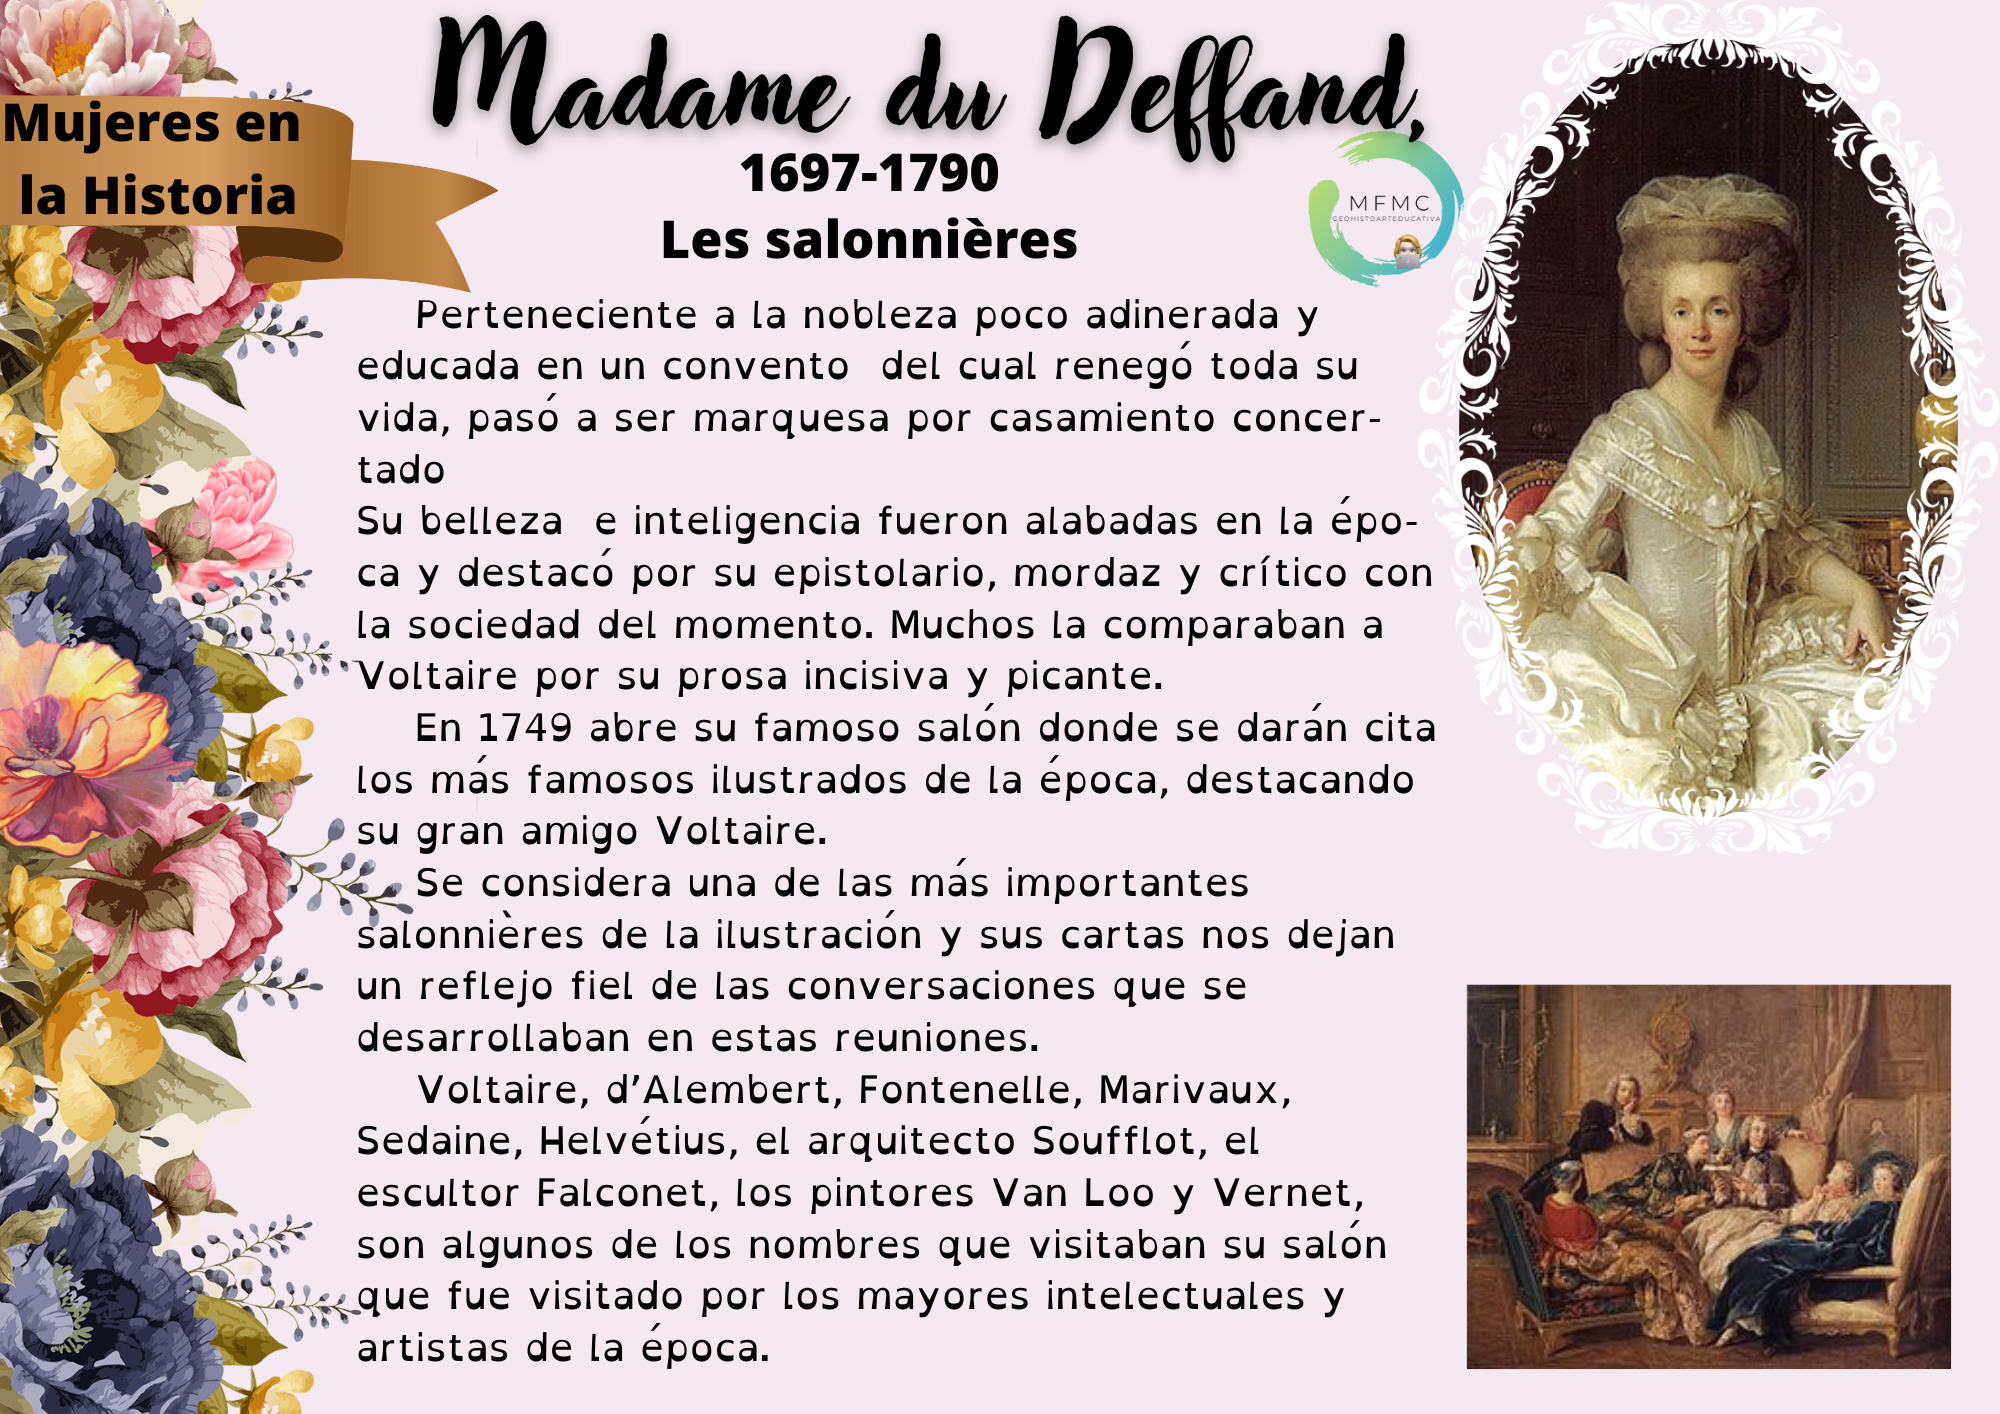 Madame du deffand